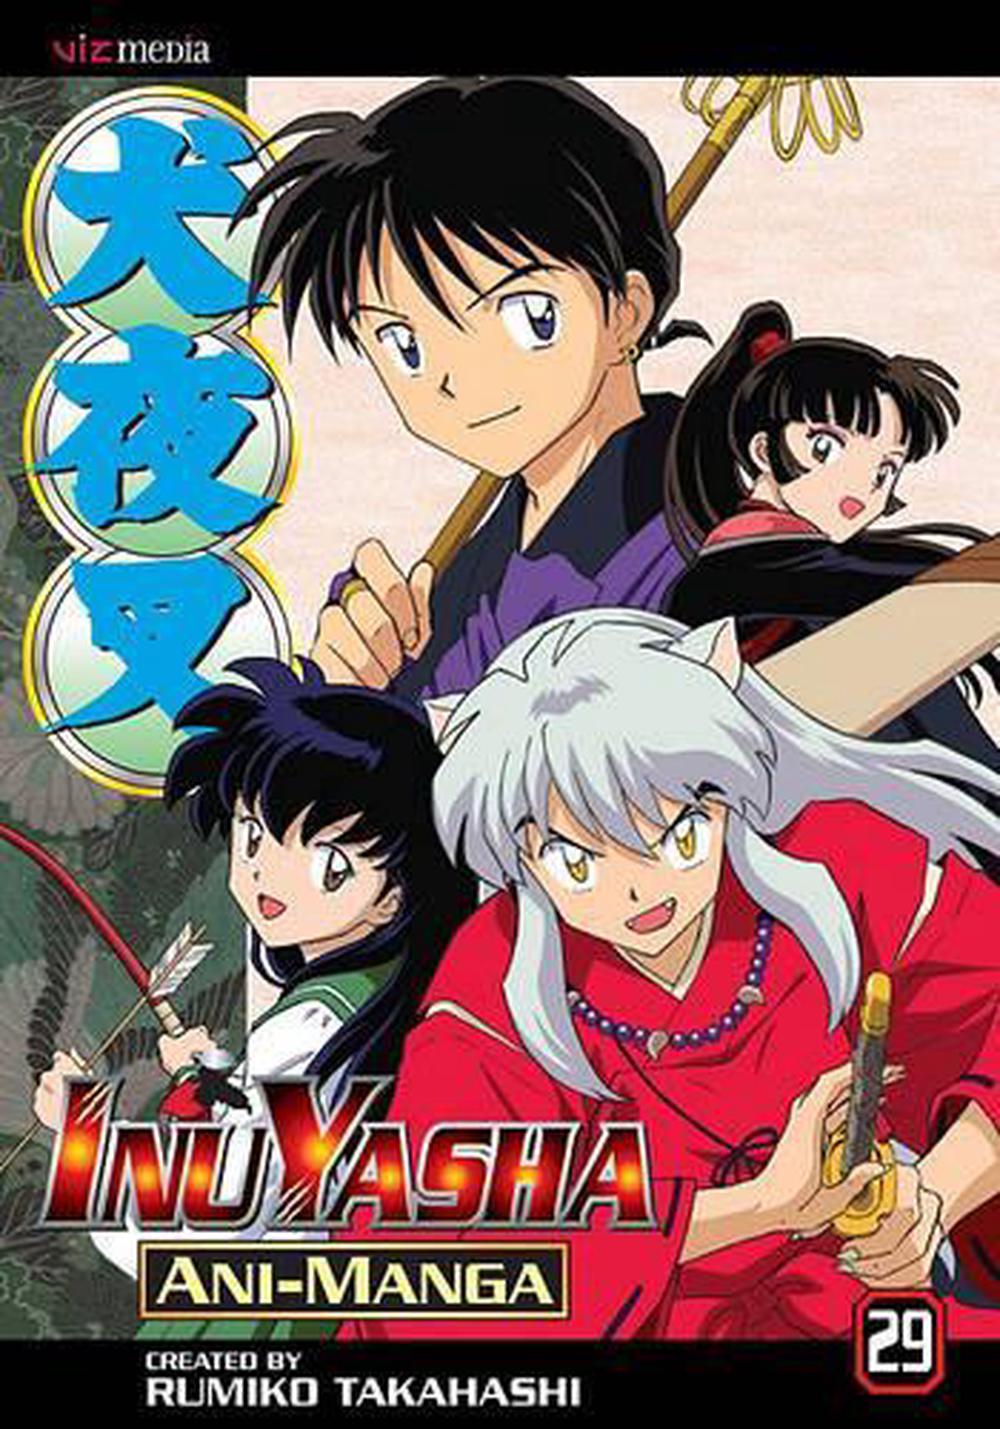 inuyasha episodes free english